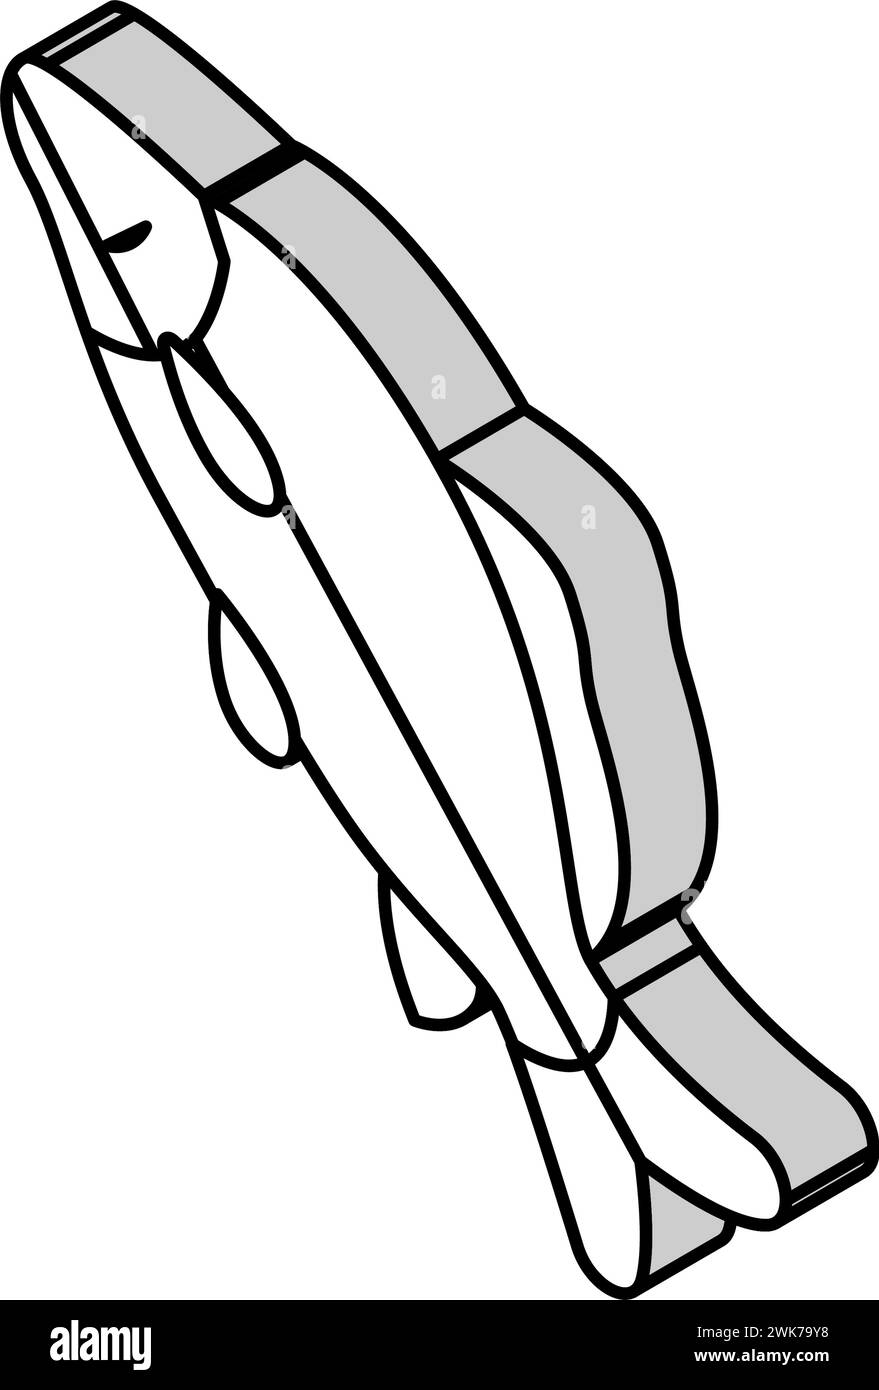 Gemeinsame isometrische Symbolvektor-Illustration des Karpfens Stock Vektor